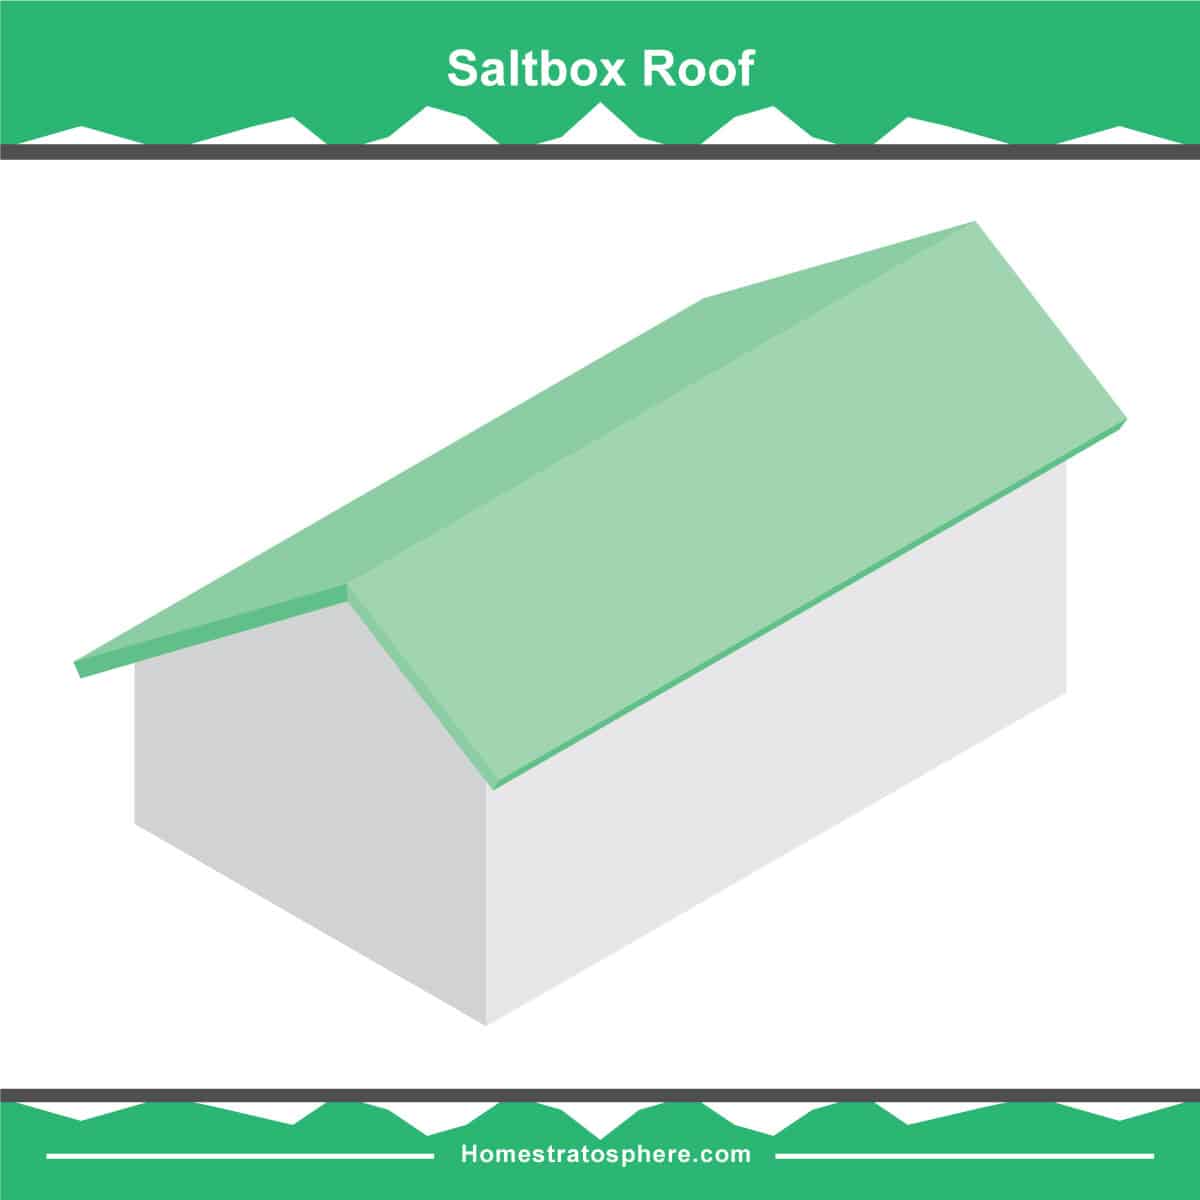 盐盒屋顶图